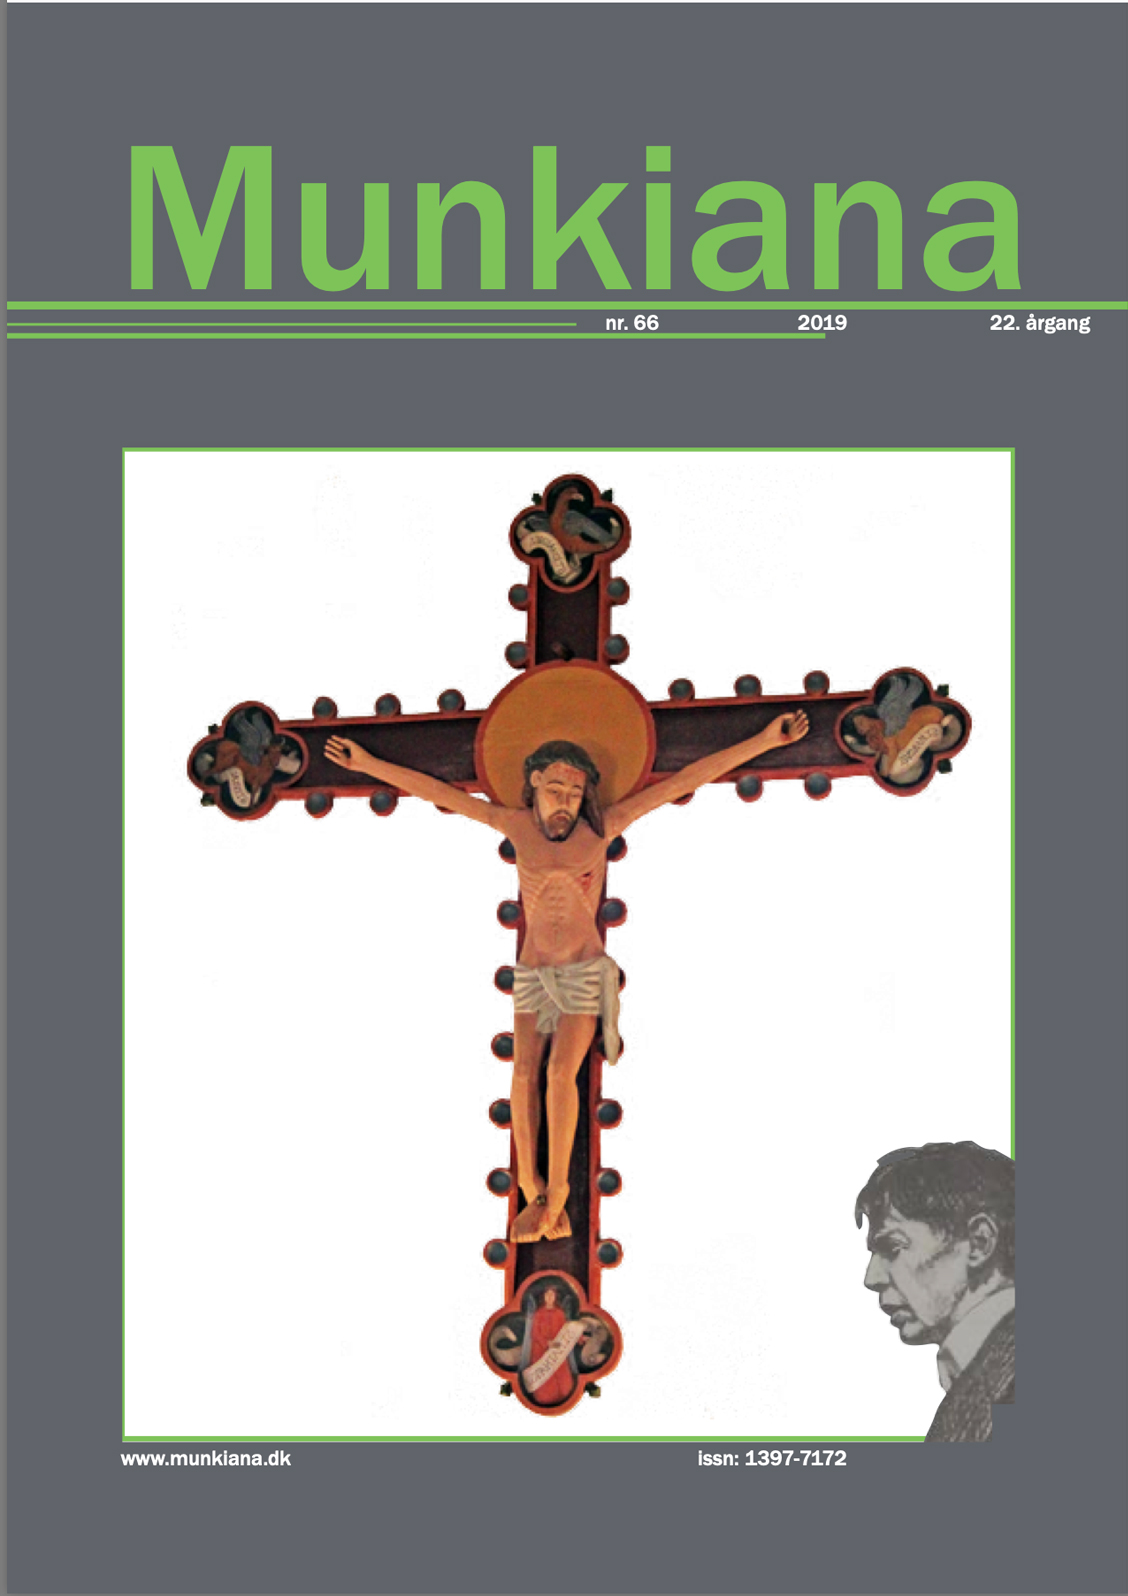 Klik på billedet for at downloade PDF med Munkiana nr. 66